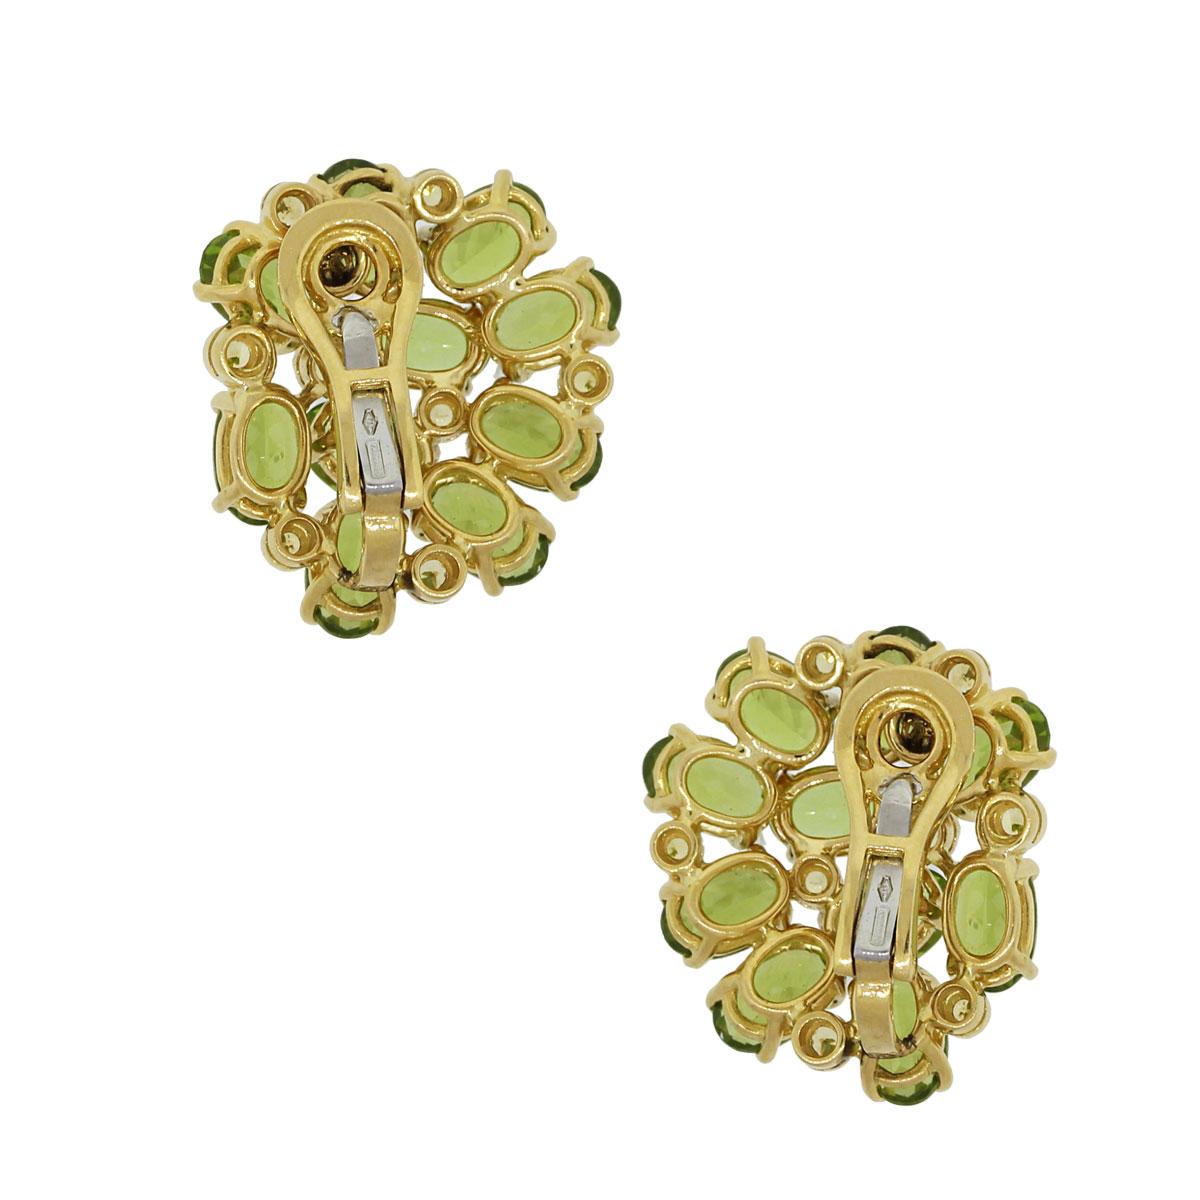 Oval Cut Peridot Gemstone Cluster Earrings